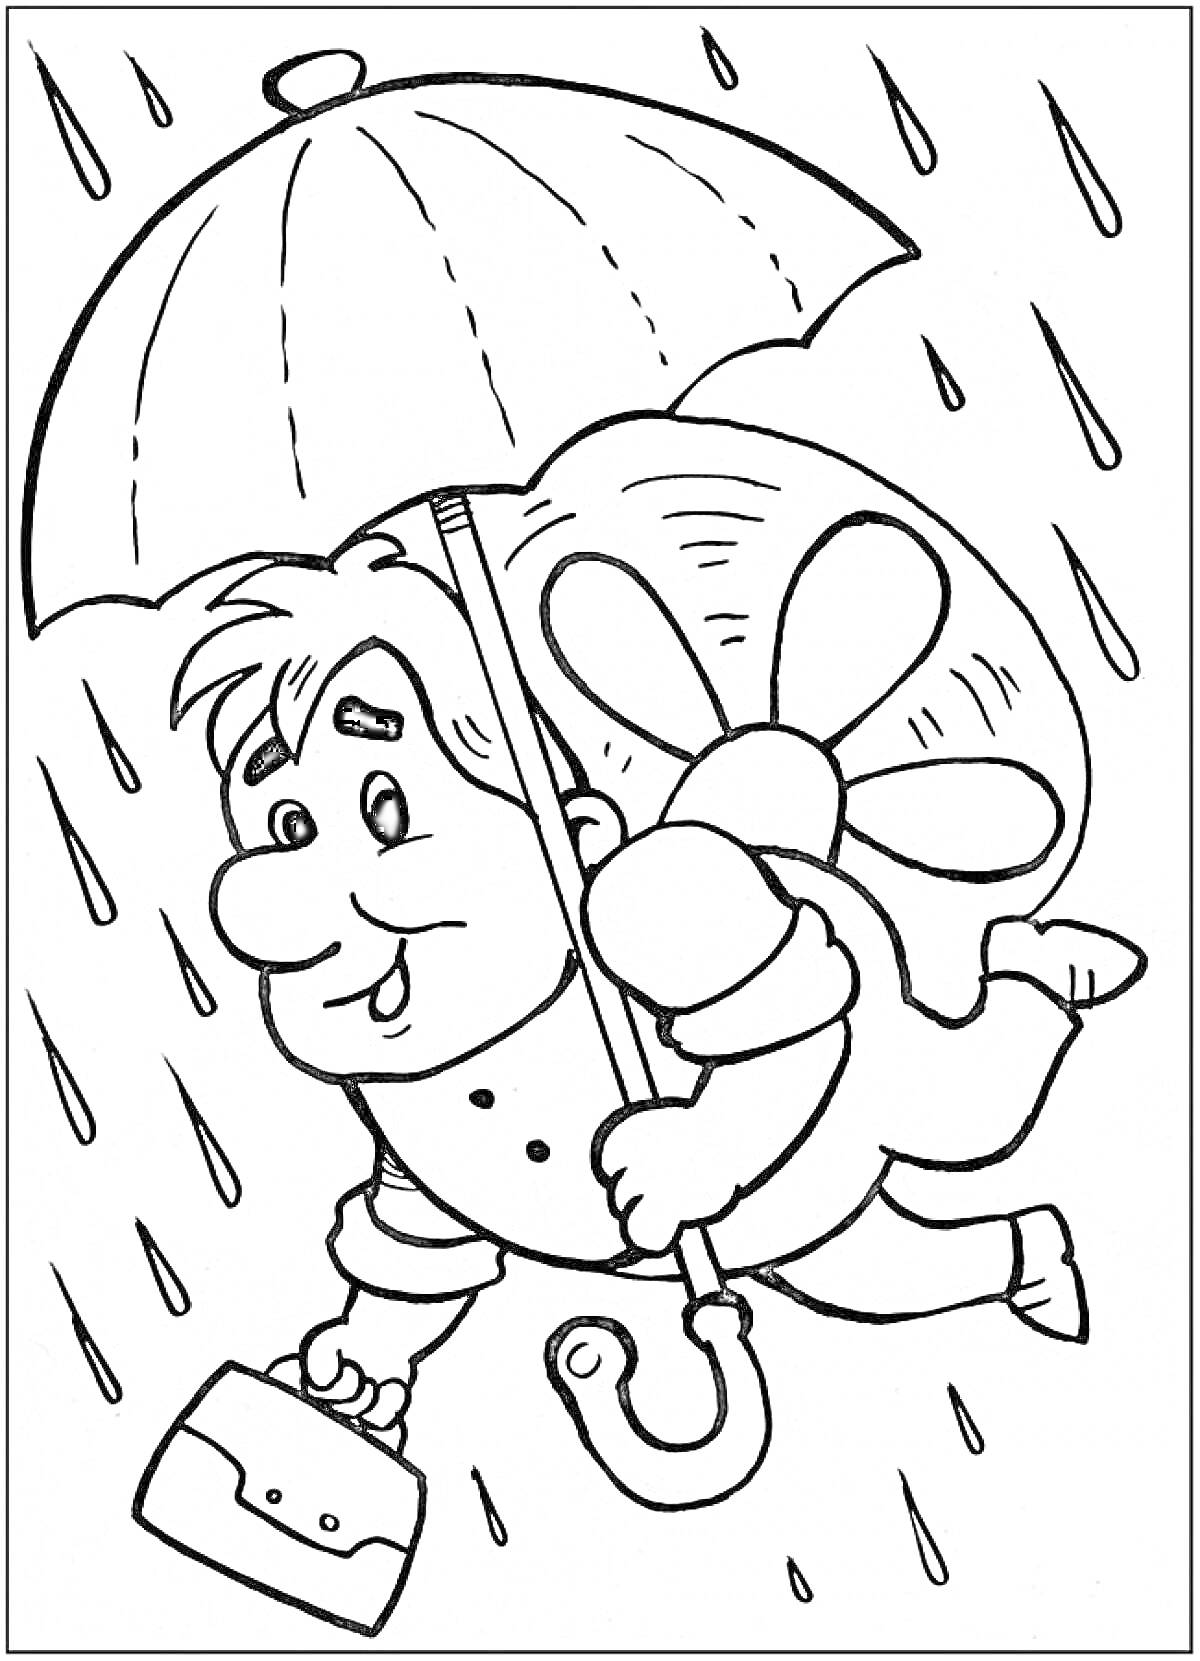 Карлсон под зонтом на фоне дождя, летящий с пропеллером и сумкой